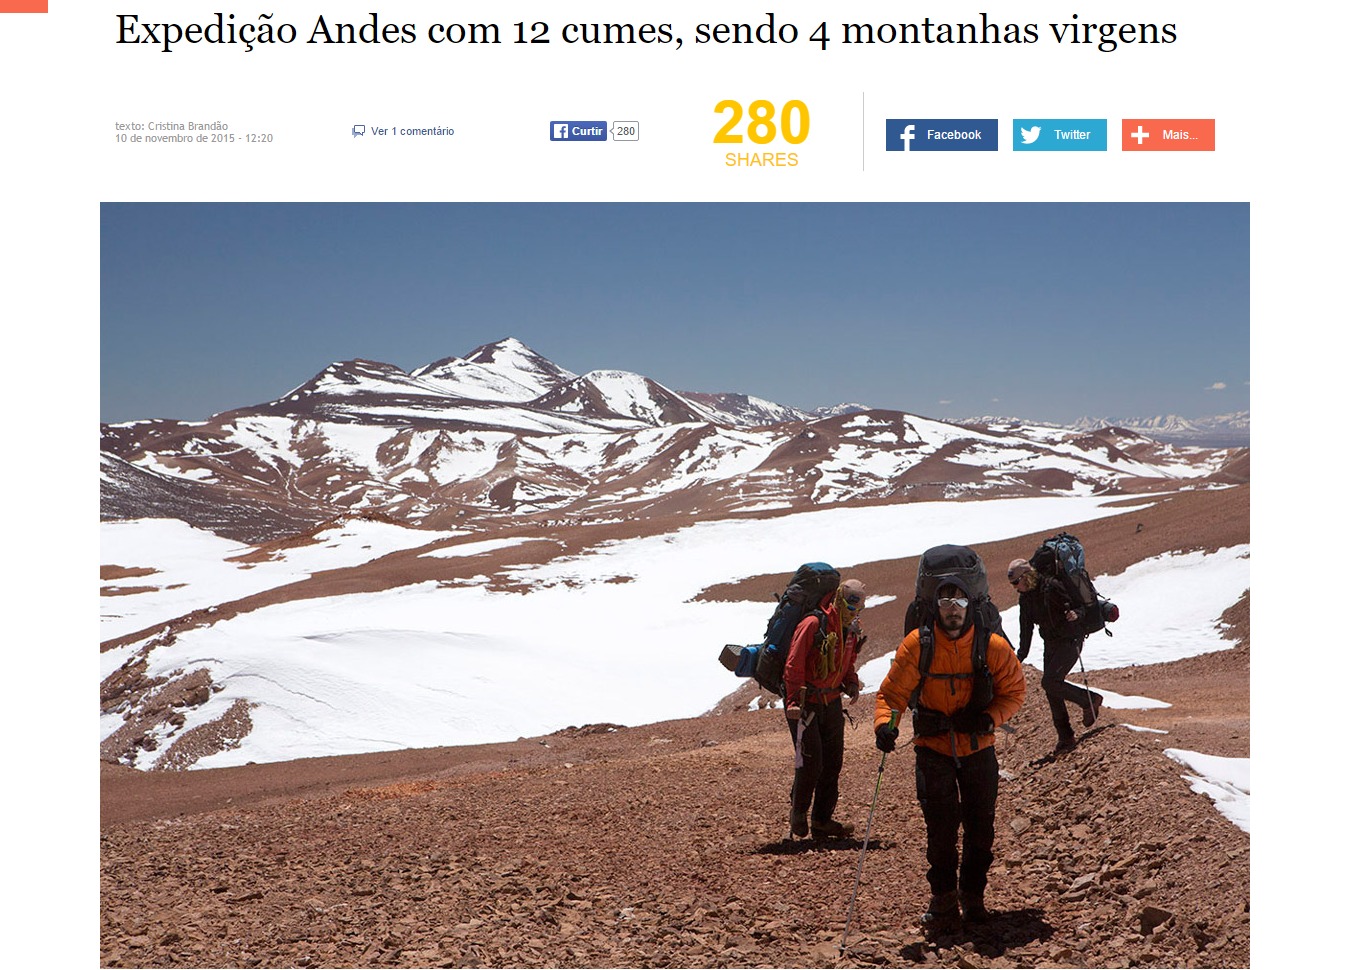 Expedição Andes completa a marca de 12 cumes sendo 4 montanhas virgens